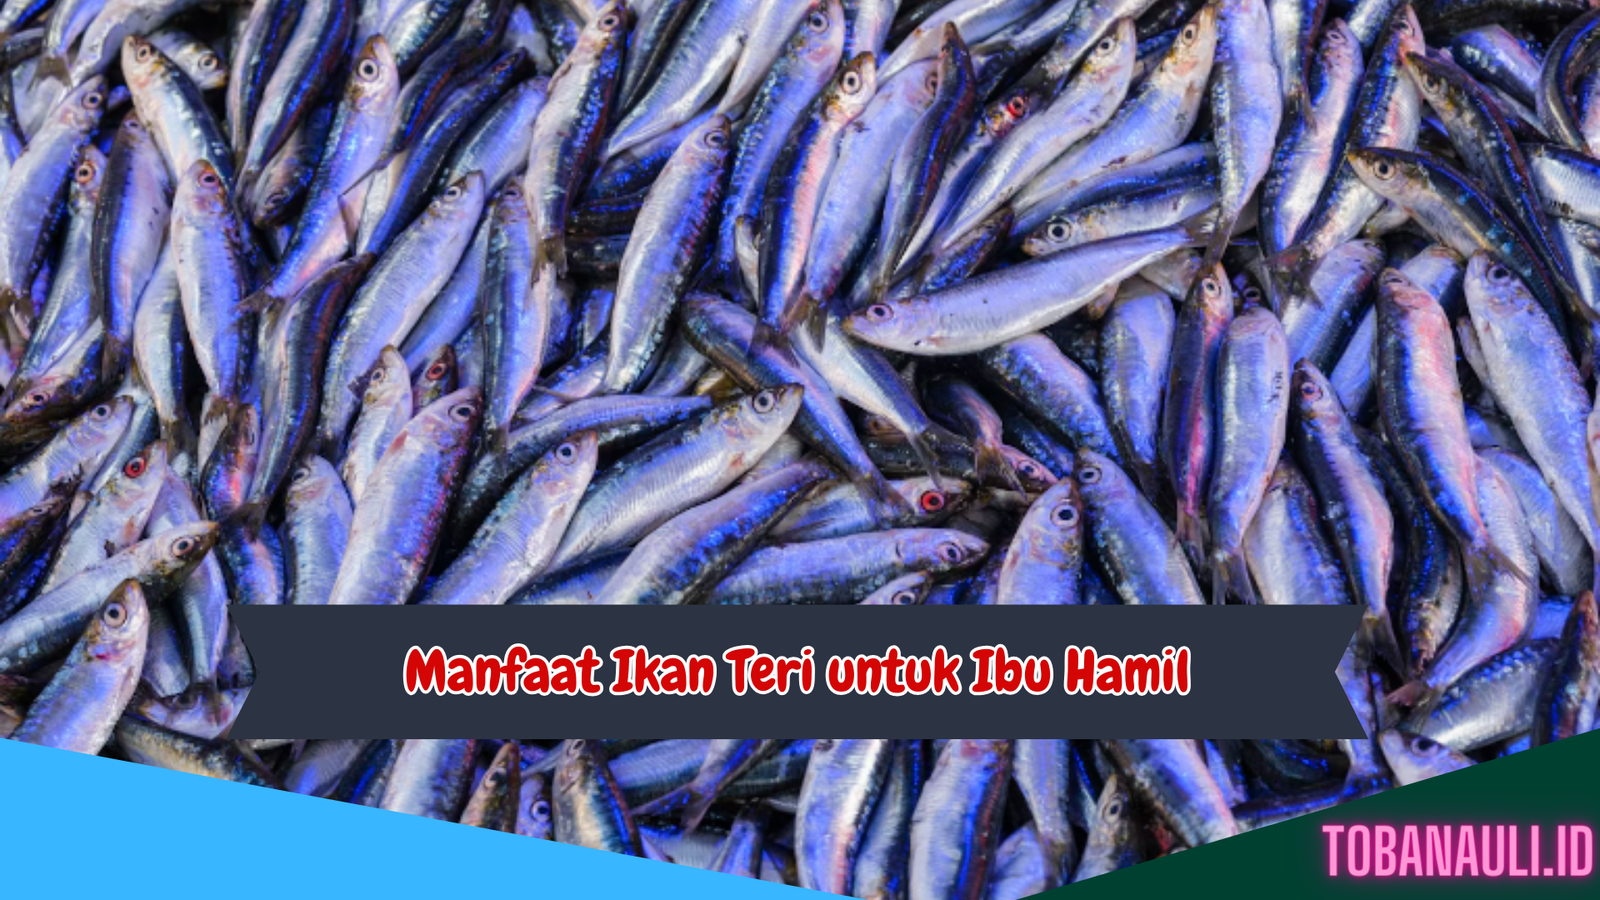 Manfaat Ikan Teri untuk Ibu Hamil